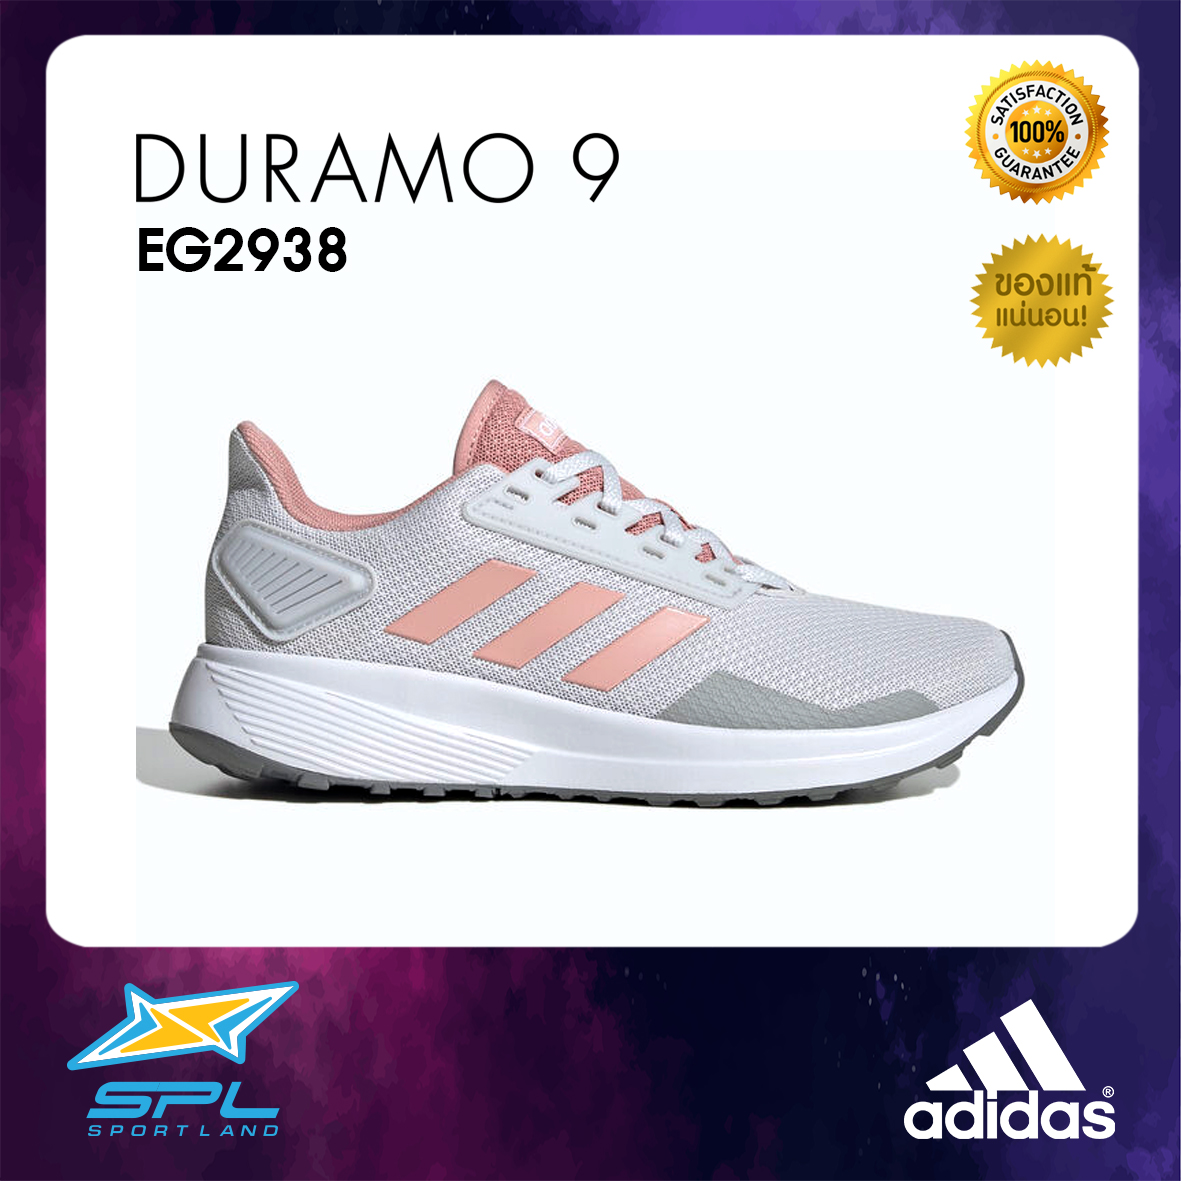 Adidas รองเท้าวิ่ง รองเท้าออกกำลังกาย รองเท้าผู้หญิง อดิดาส Runing Women Shoe Duramo 9 EG2938 (2000)